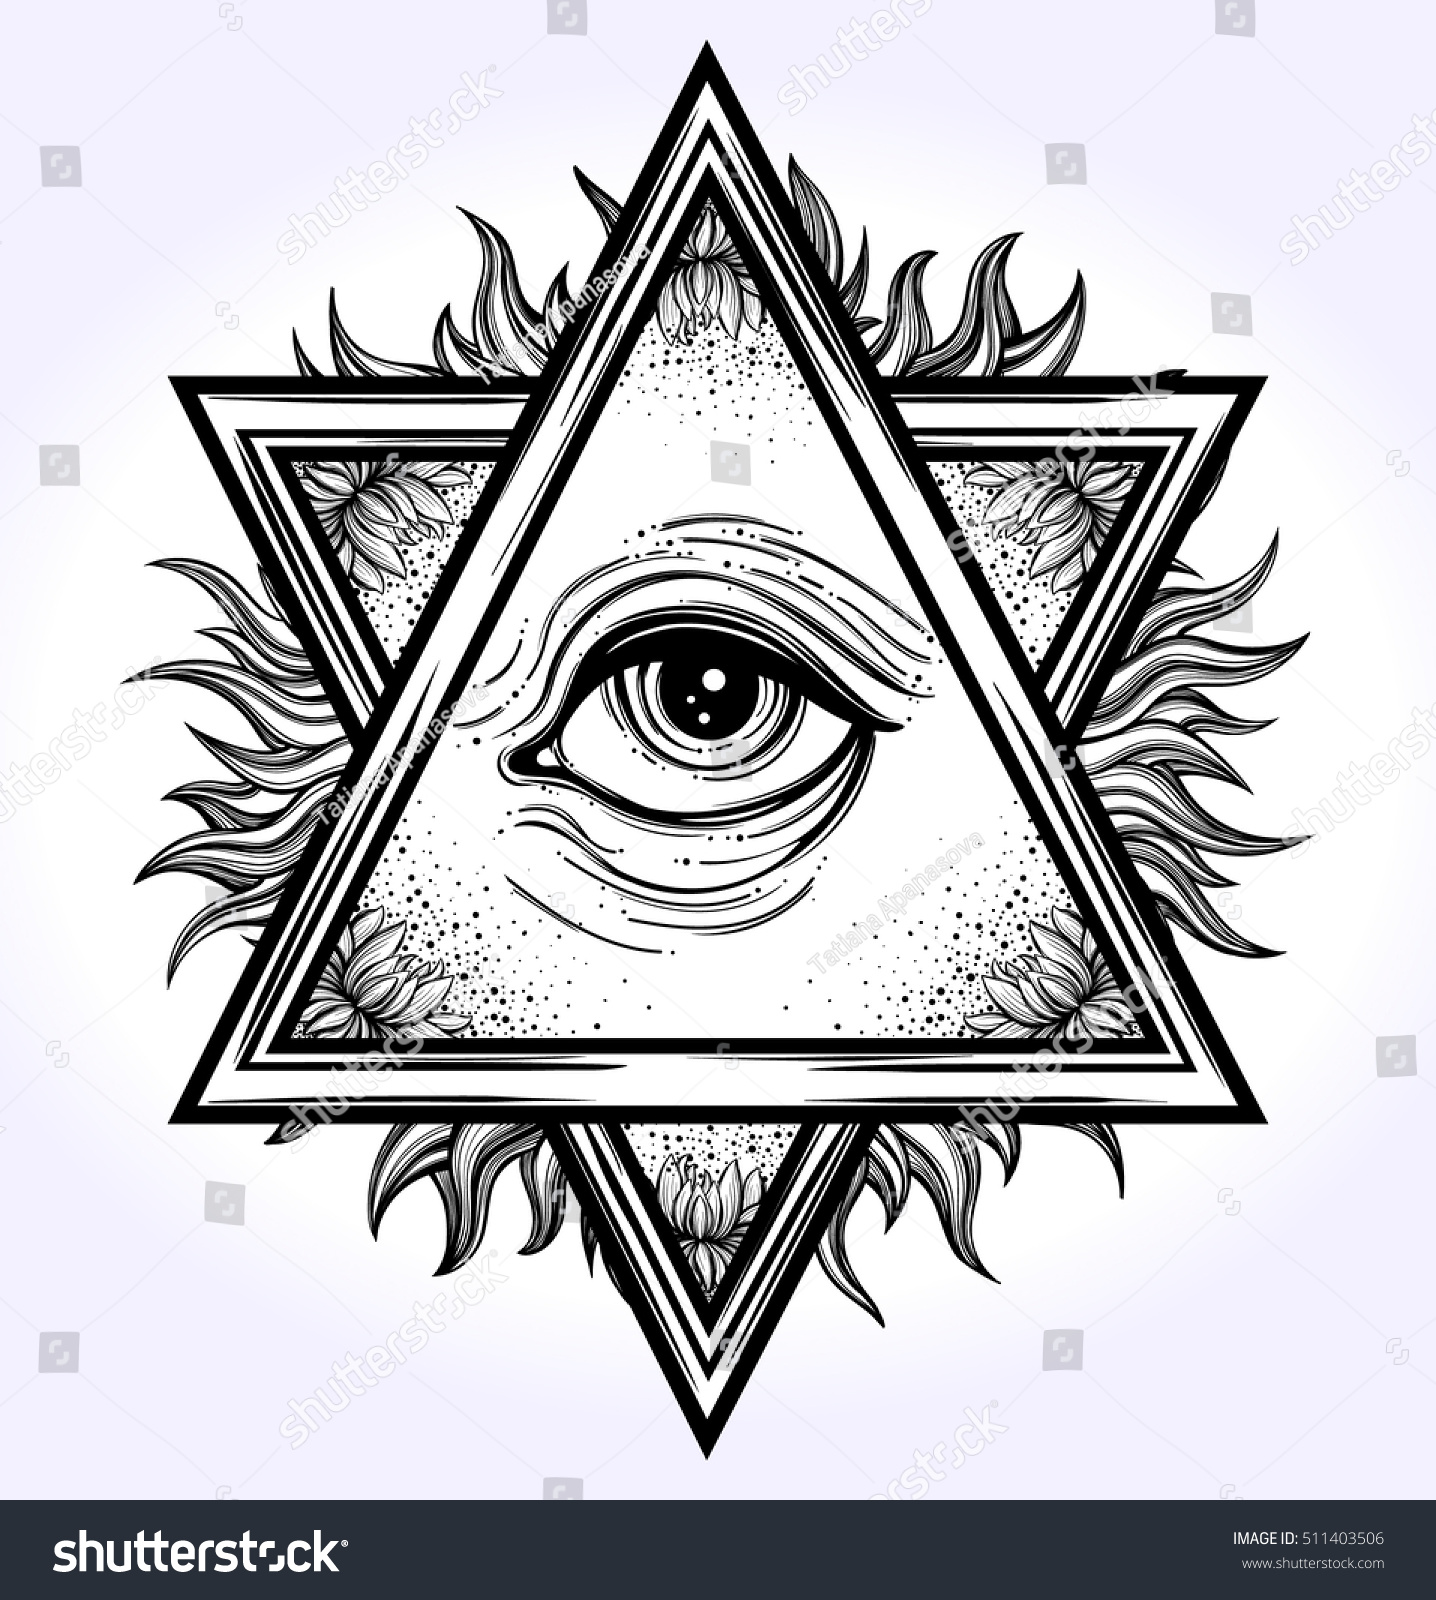 Звезда Давида и Всевидящее око